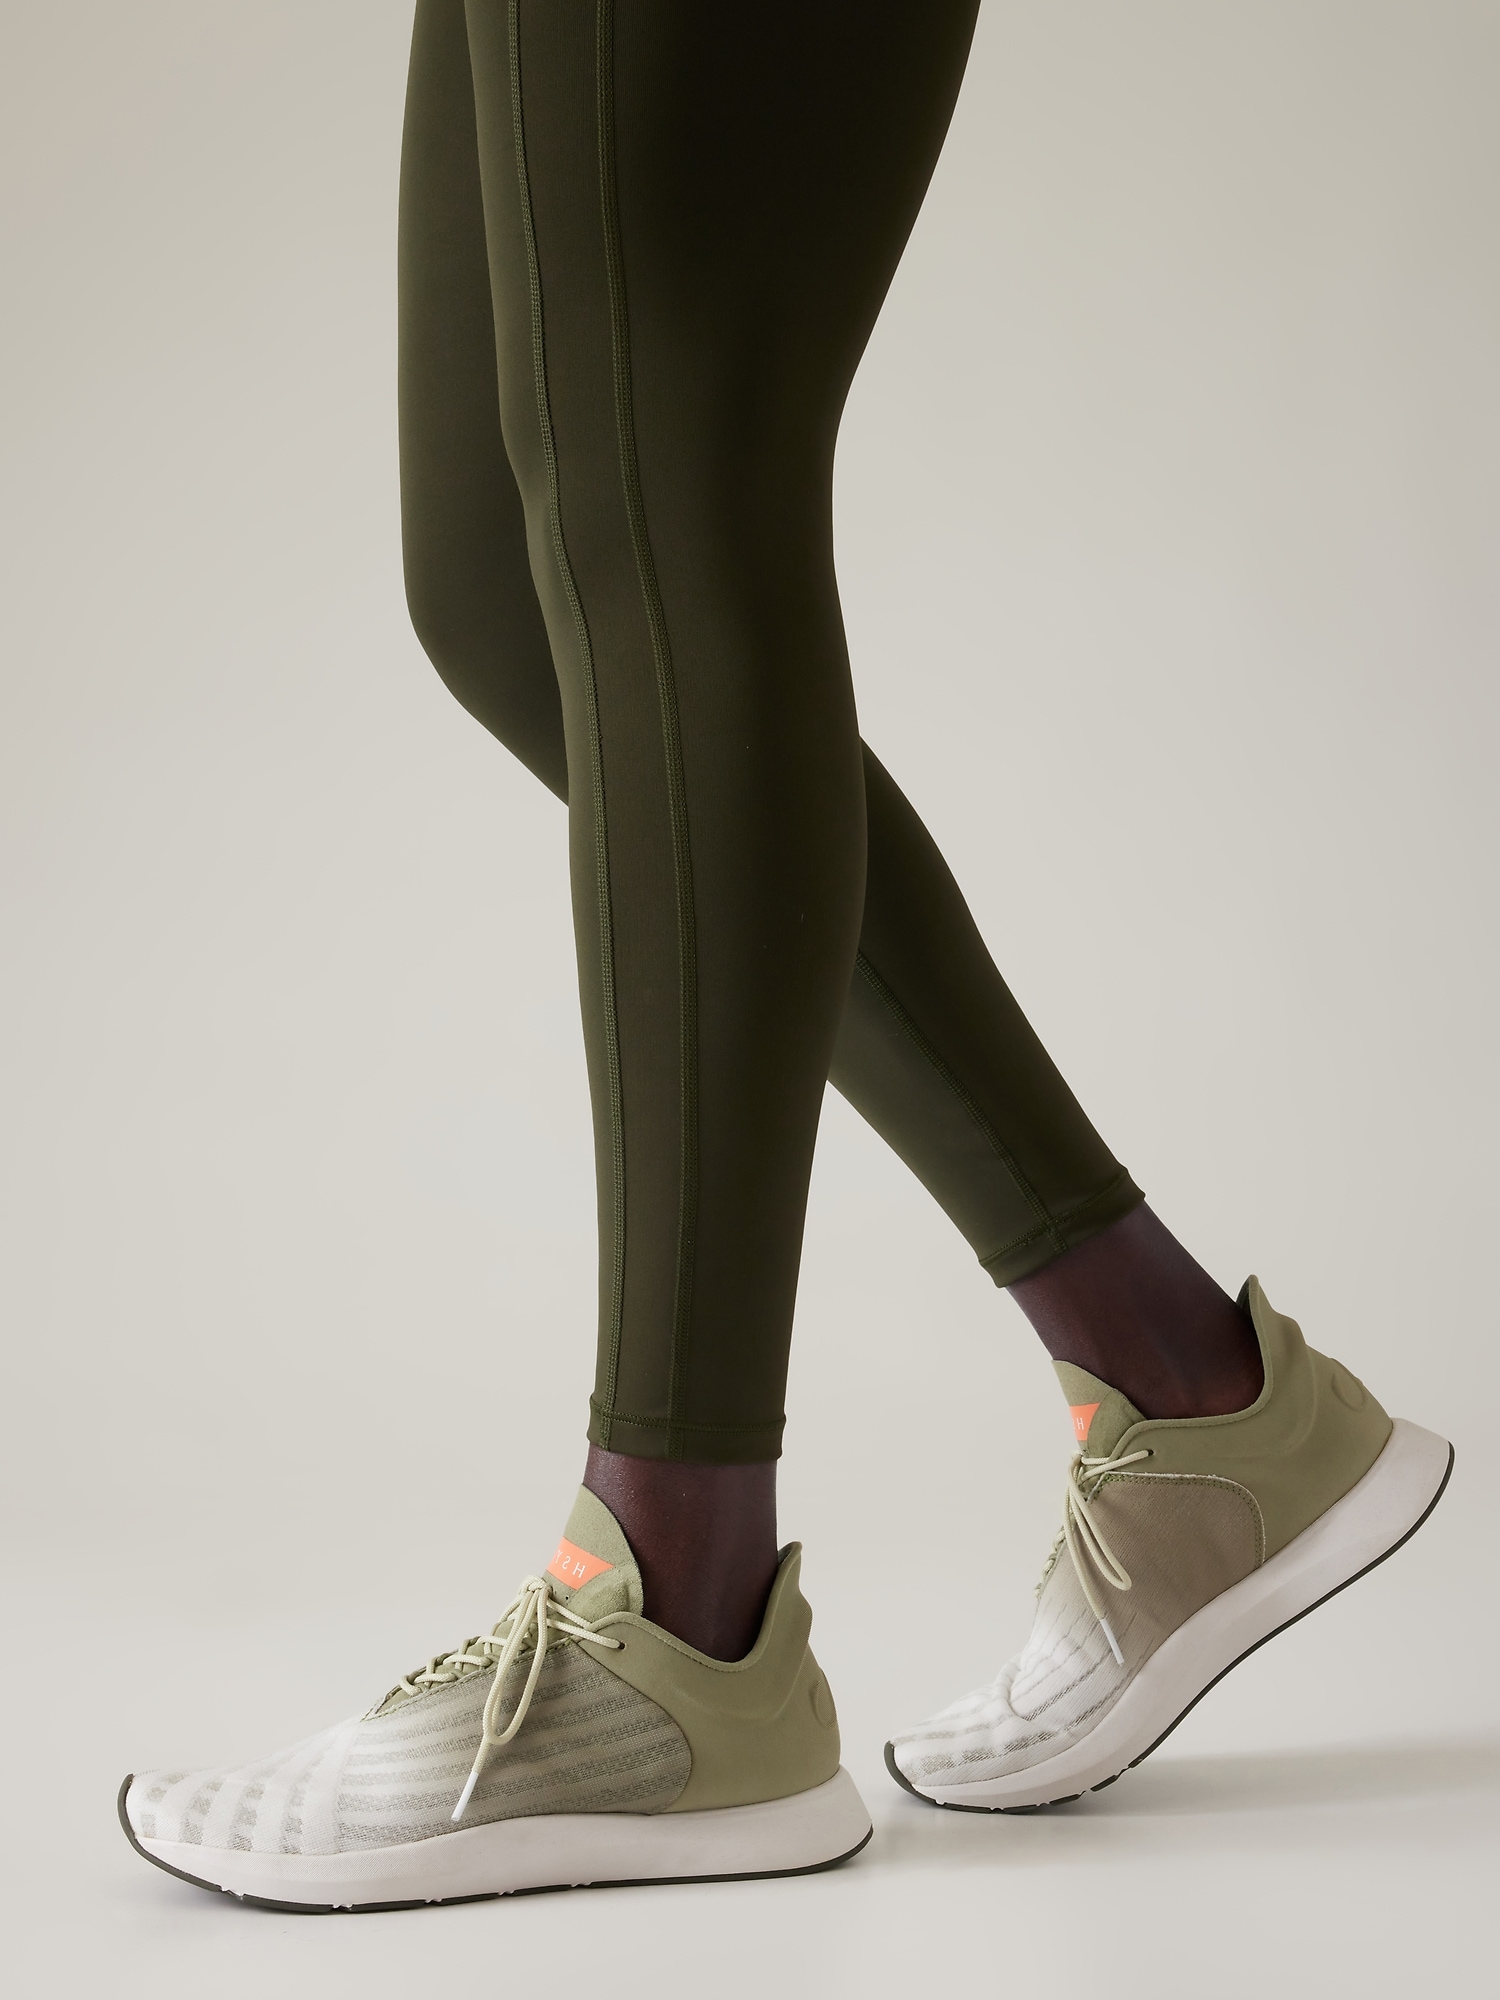 Athleta Saysh One Sneaker In Eucalyptus Olive